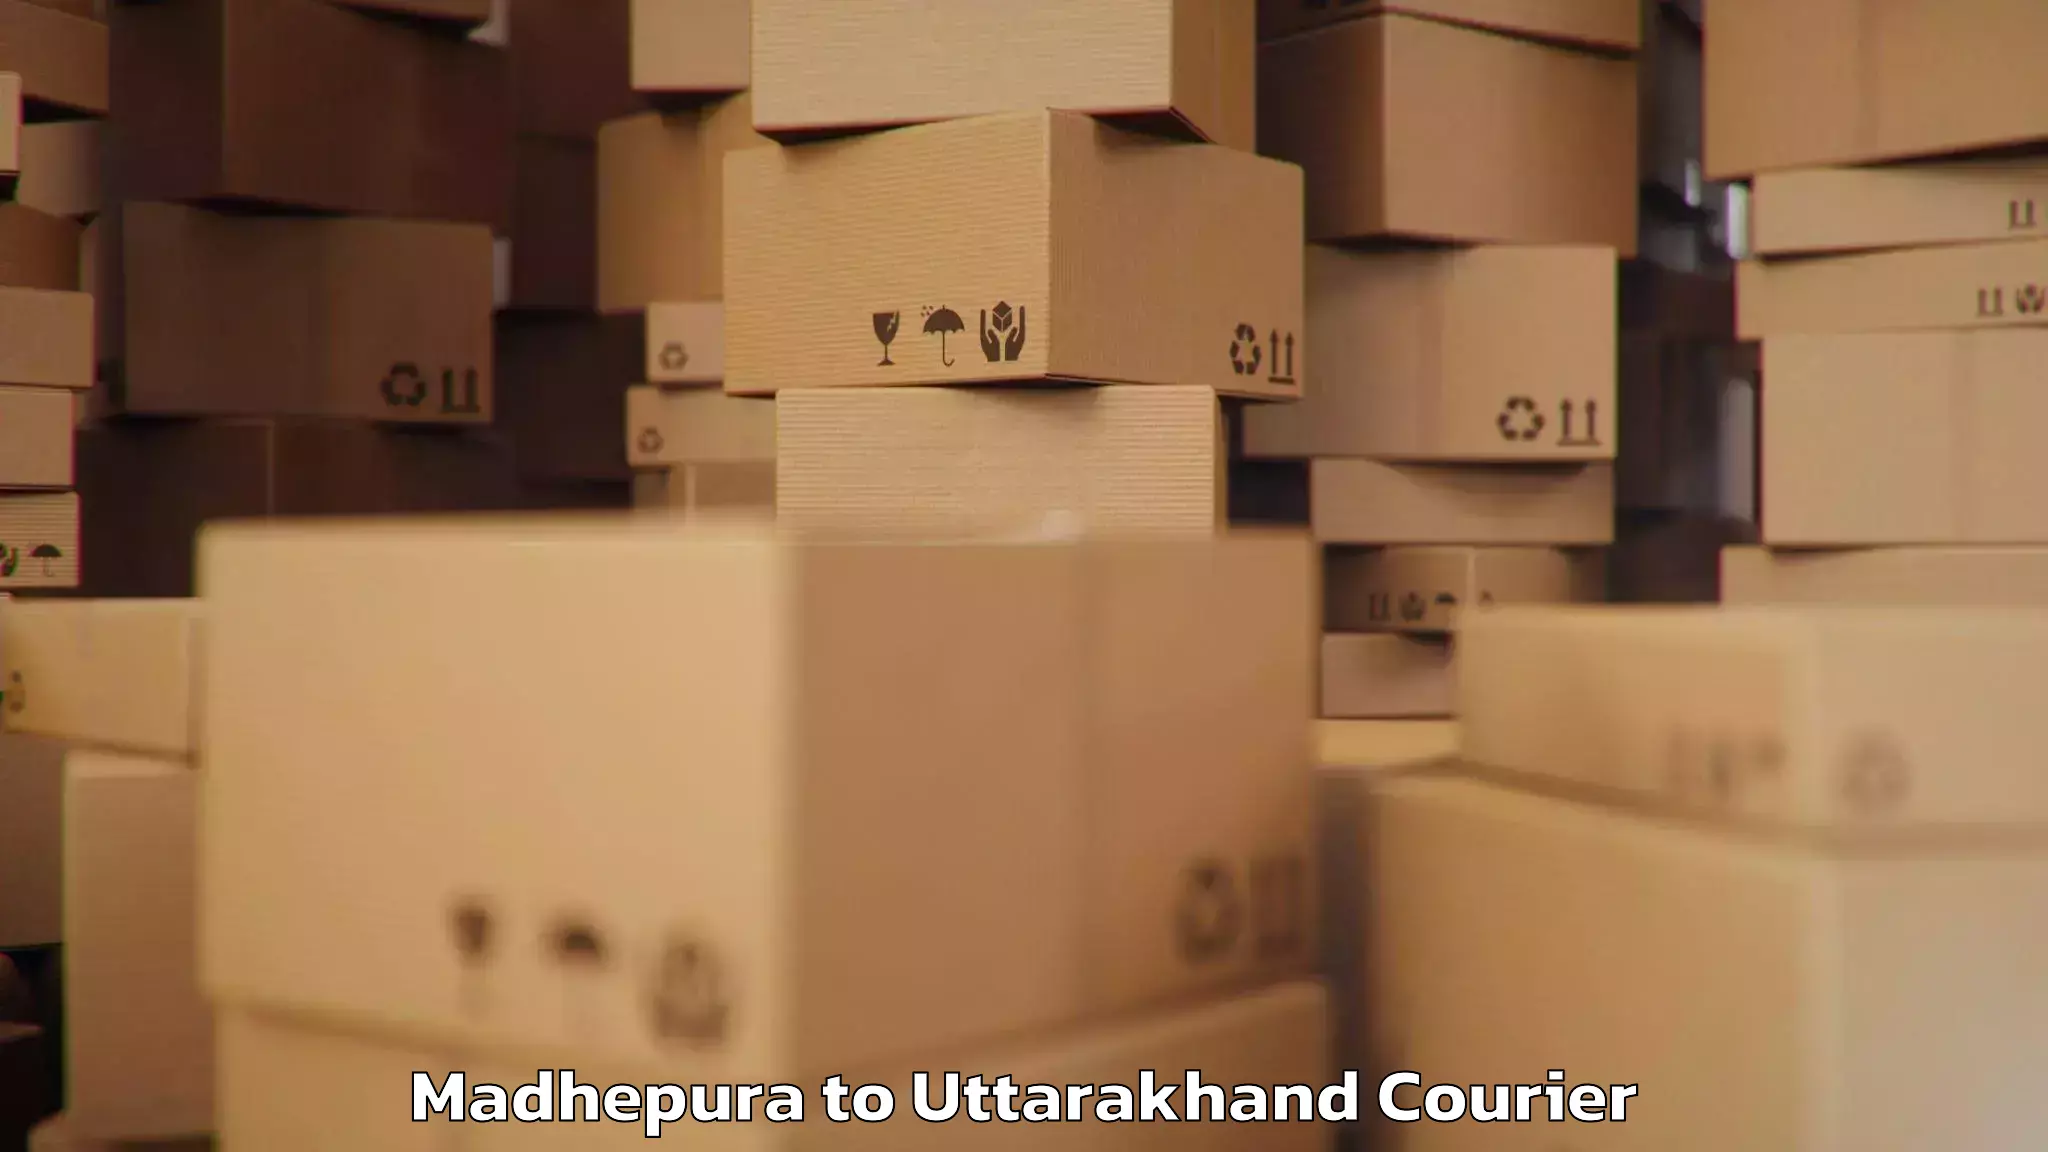 Baggage transport logistics Madhepura to Uttarakhand